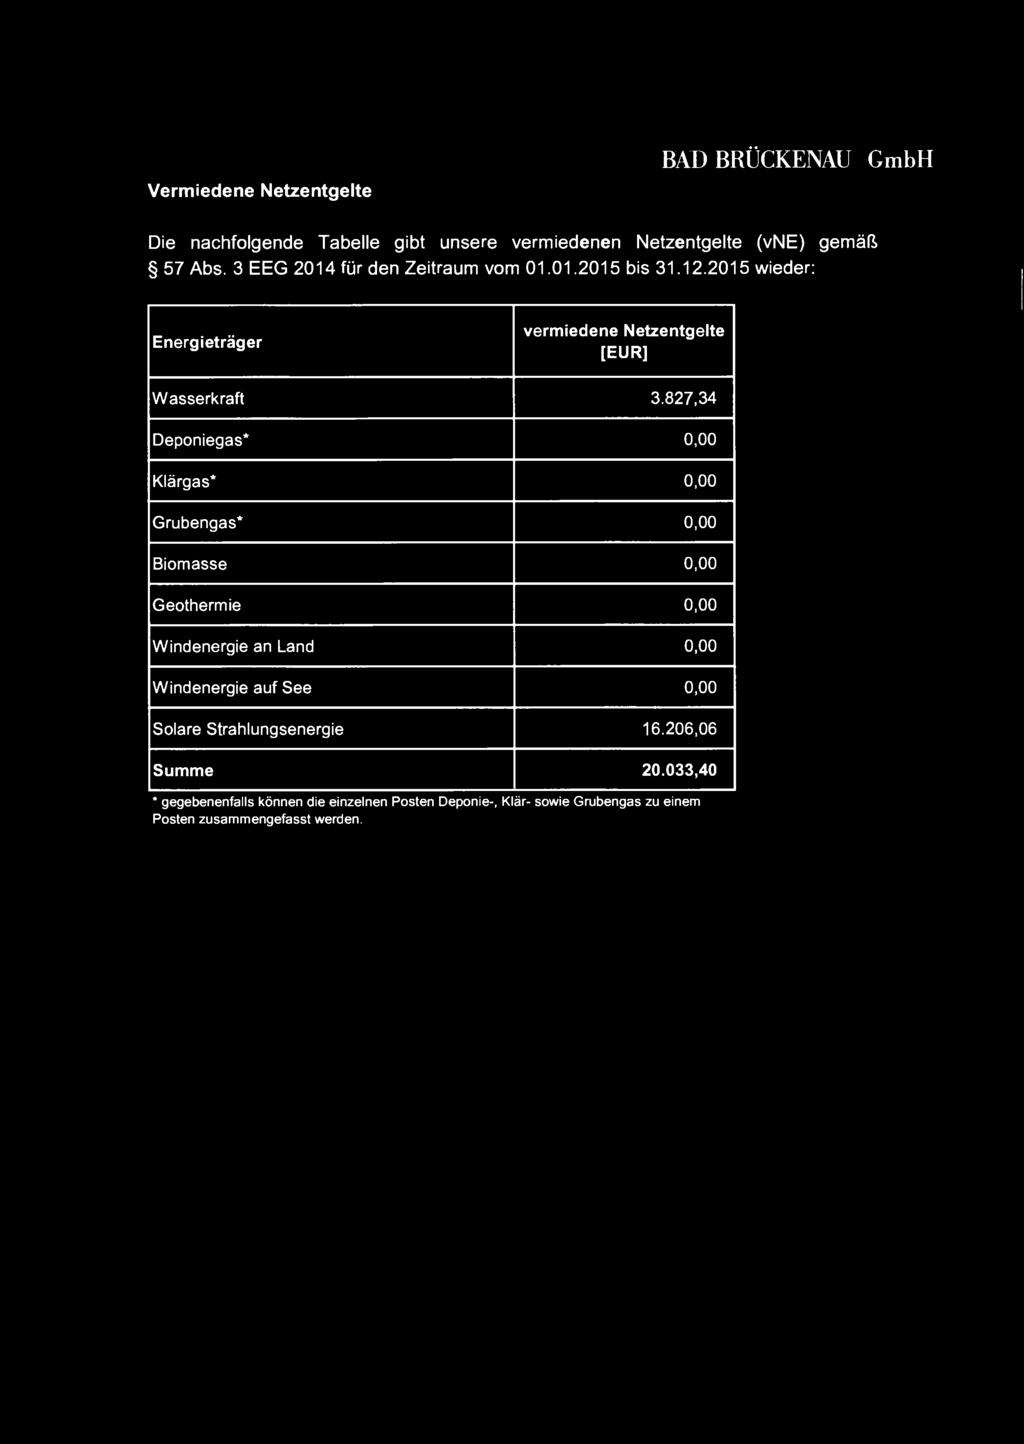 Vermiedene Netzentgelte BAD BRÜCKENAU GmbH Die nachfolgende Tabelle gibt unsere vermiedenen Netzentgelte (vne) gemäß 57 Abs. 3 EEG 2014fürden Zeitraum vom 01.01.2015 bis 31.12.